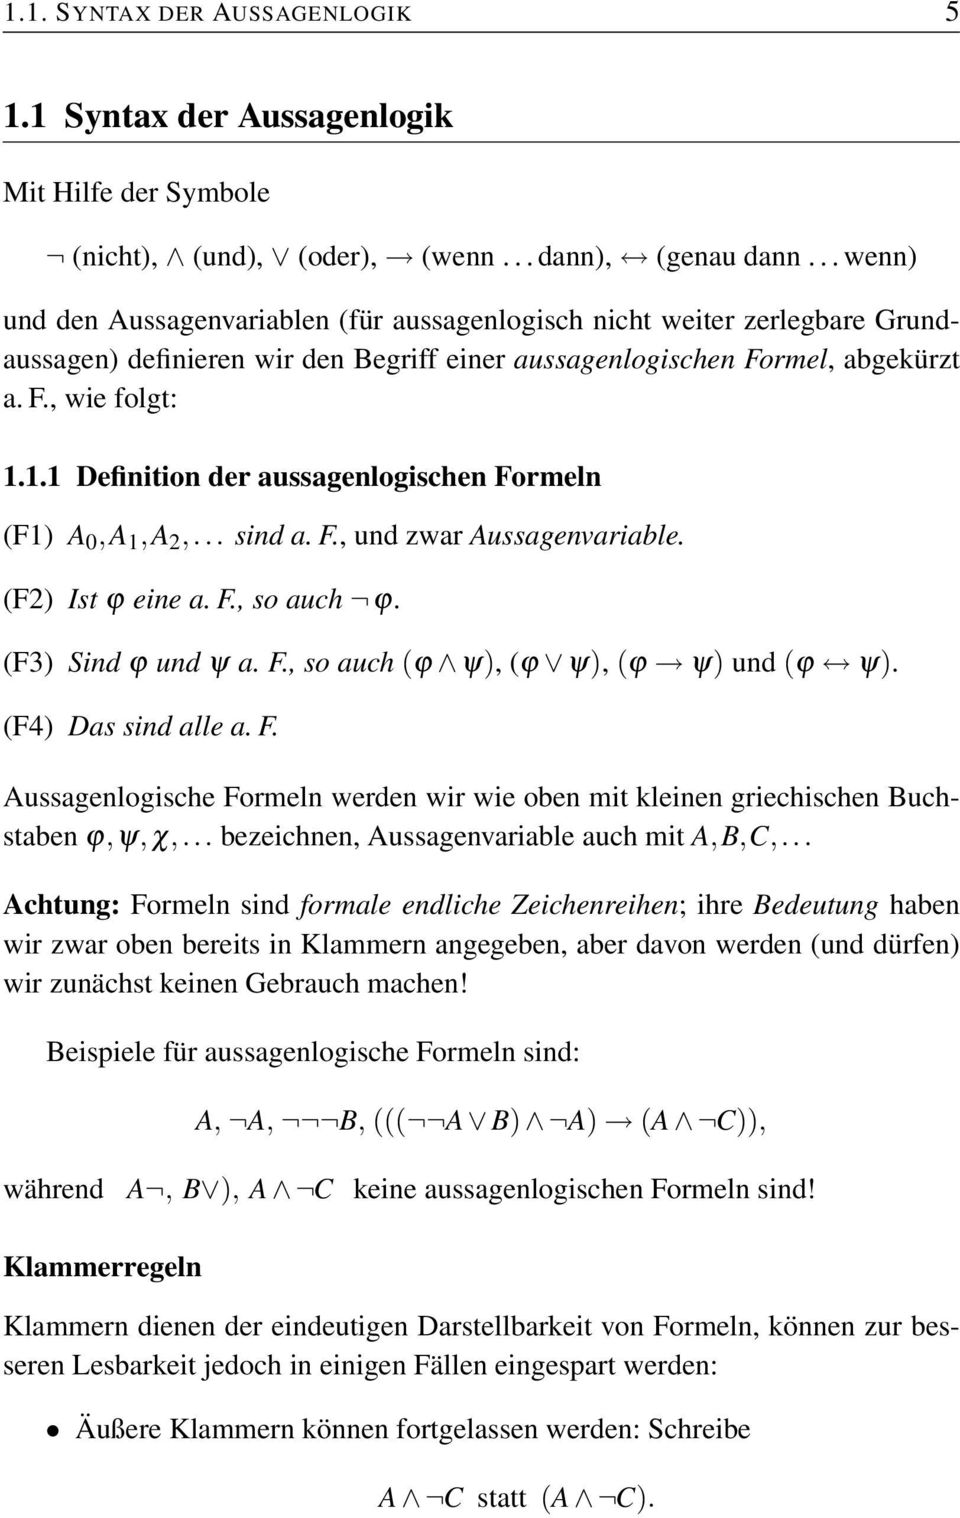 1.1 Definition der aussagenlogischen Formeln (F1) A 0,A 1,A 2,... sind a. F., und zwar Aussagenvariable. (F2) Ist ϕ eine a. F., so auch ϕ. (F3) Sind ϕ und ψ a. F., so auch (ϕ ψ), (ϕ ψ), (ϕ ψ) und (ϕ ψ).